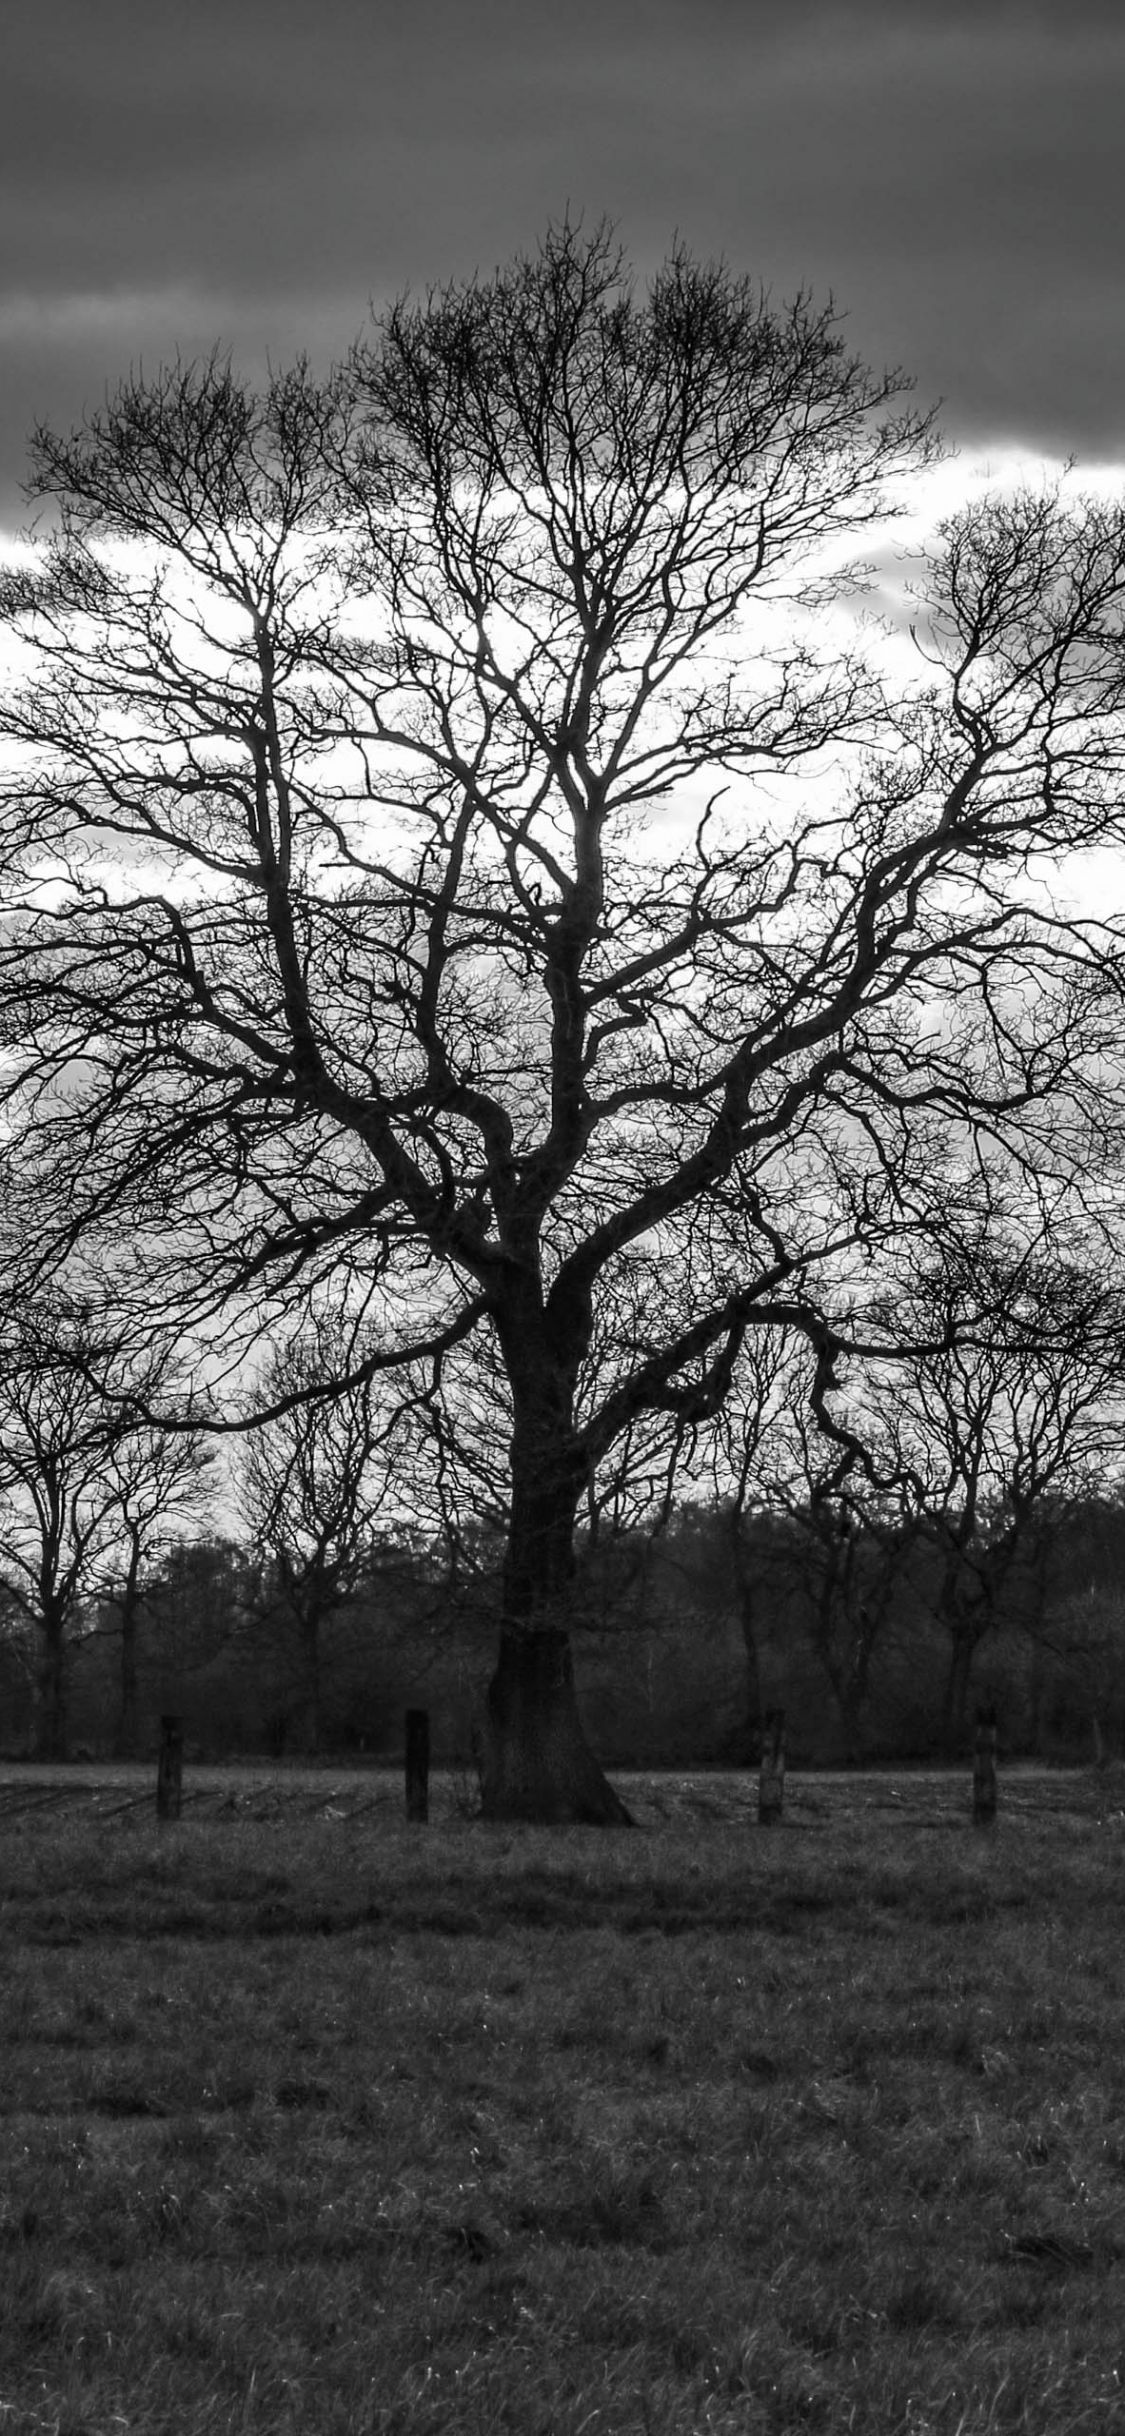  Baum Hintergrundbild 1125x2436. Hintergrundbilder. Baum Silhouette in schwarzweiß